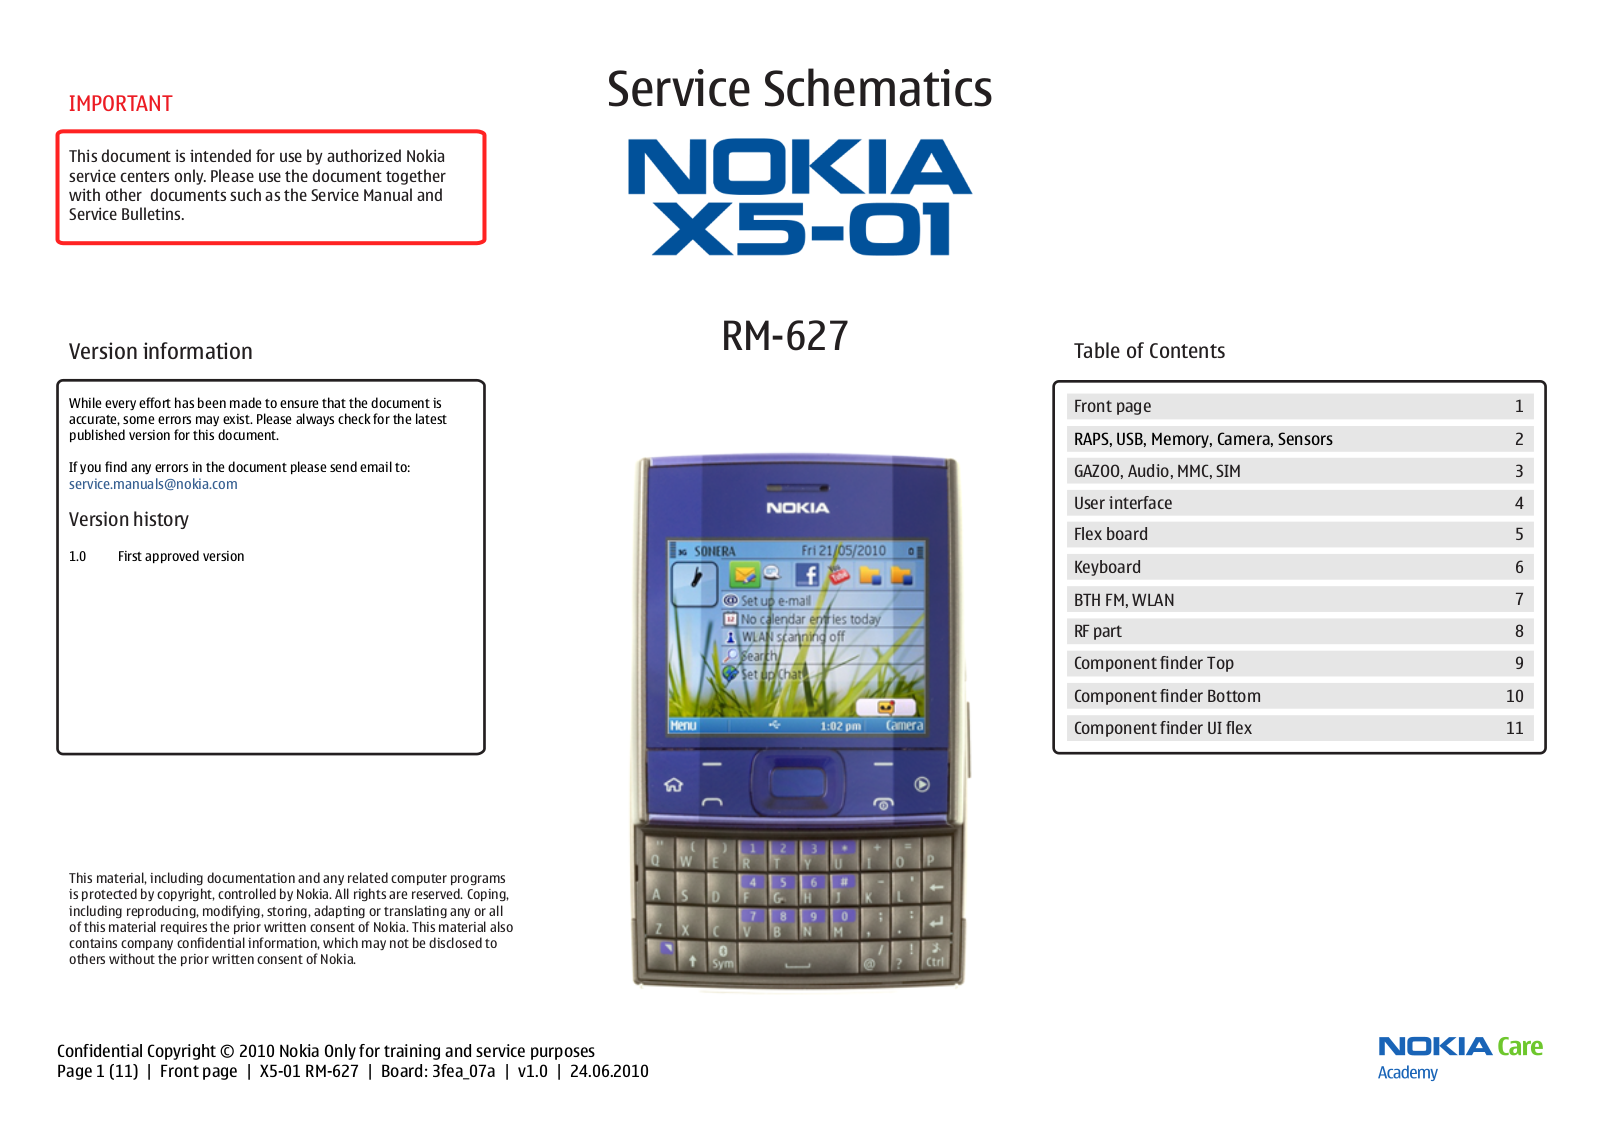 Nokia X5-01 RM-627 Schematic